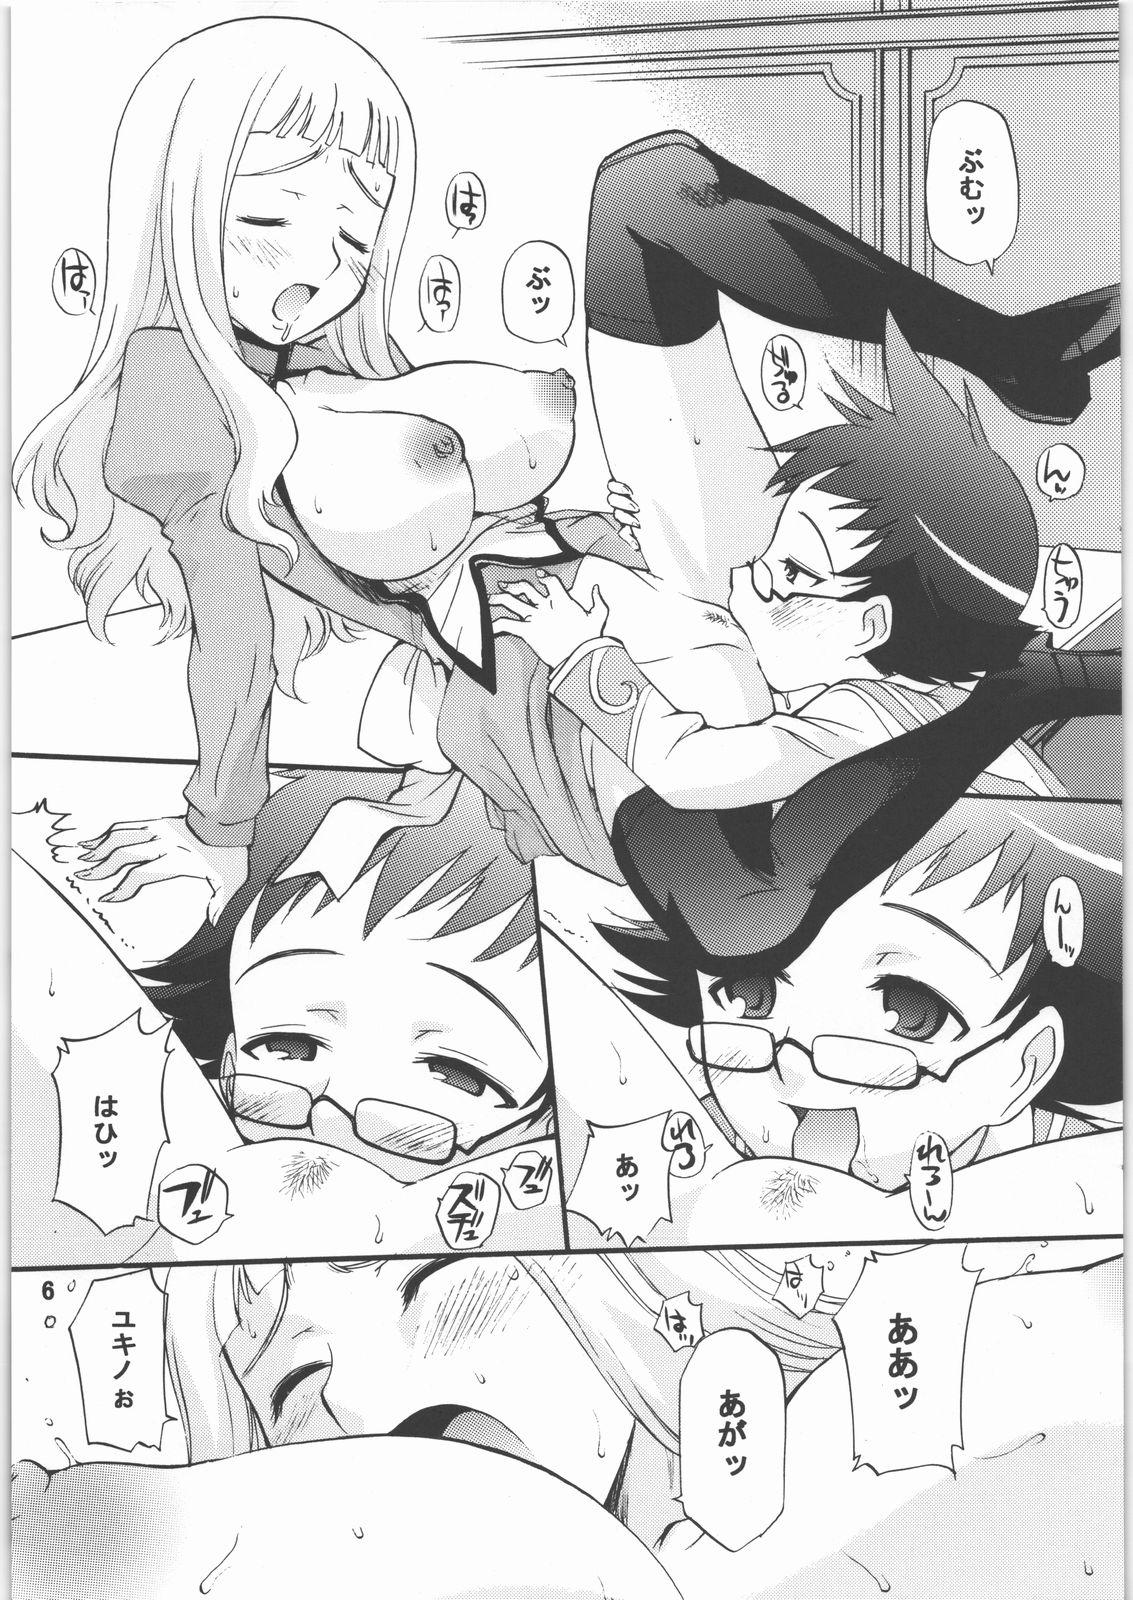 Leite Maiotsu Paiotsu - Mai-otome Furry - Page 5